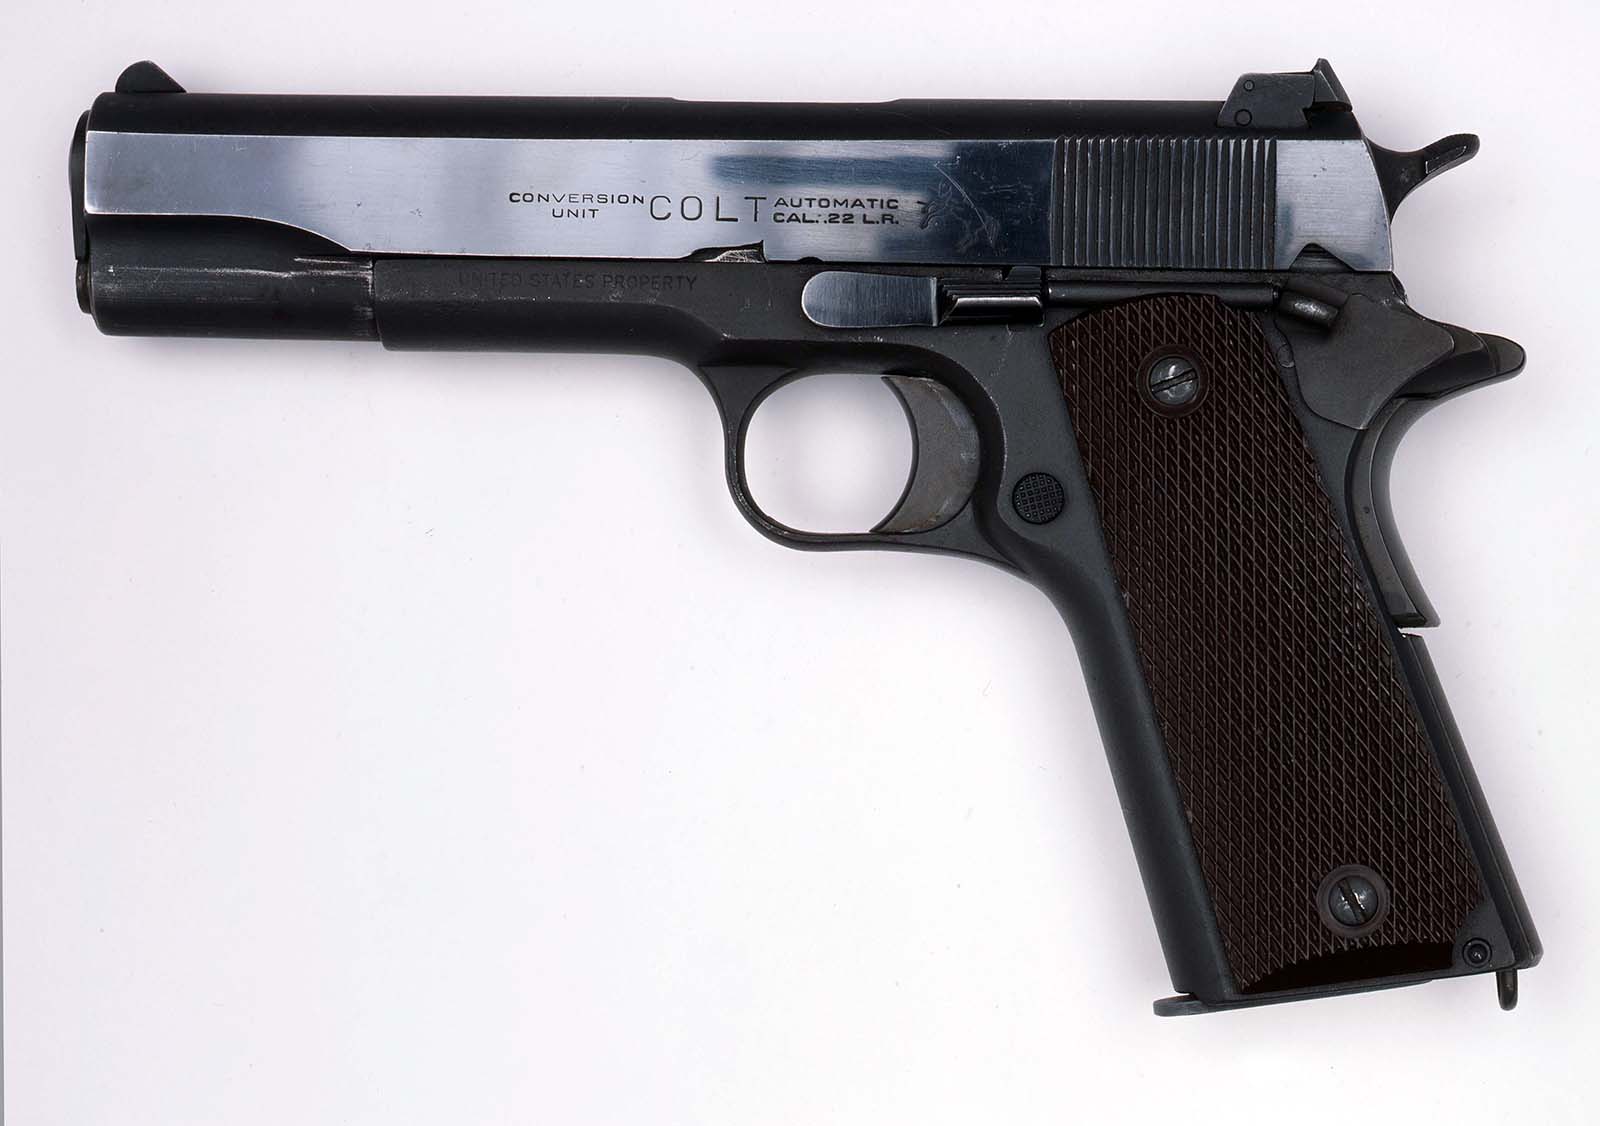 Colt 1911. Gift of Robert E. Turnquist. 2006.8.6a